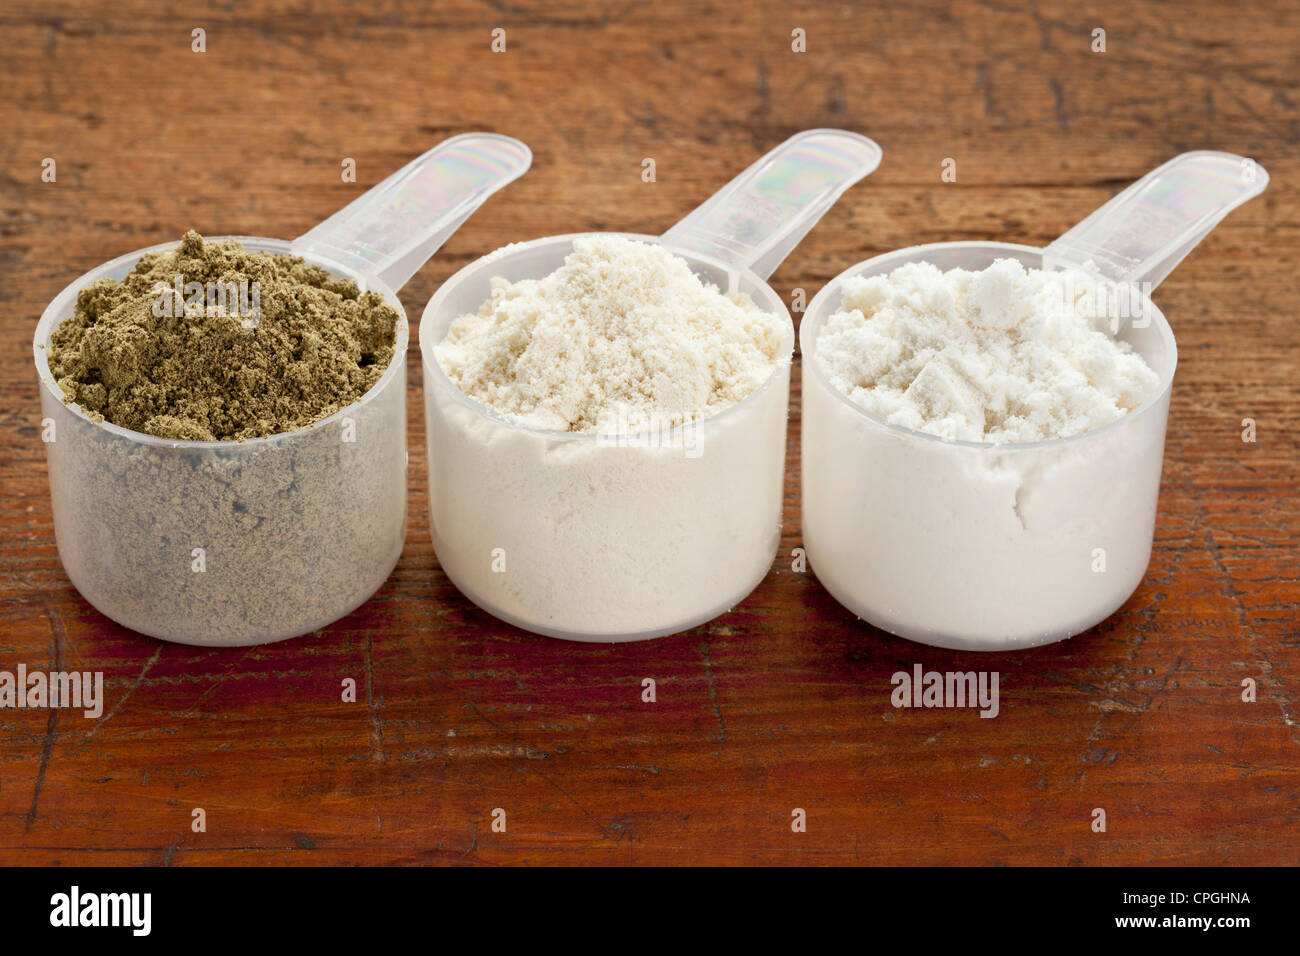 Misurazione di plastica scoop di tre proteine in polvere (da sinistra i semi di canapa, il siero di latte concentrato, il siero di latte isolare) su un grunge superficie di legno Foto Stock